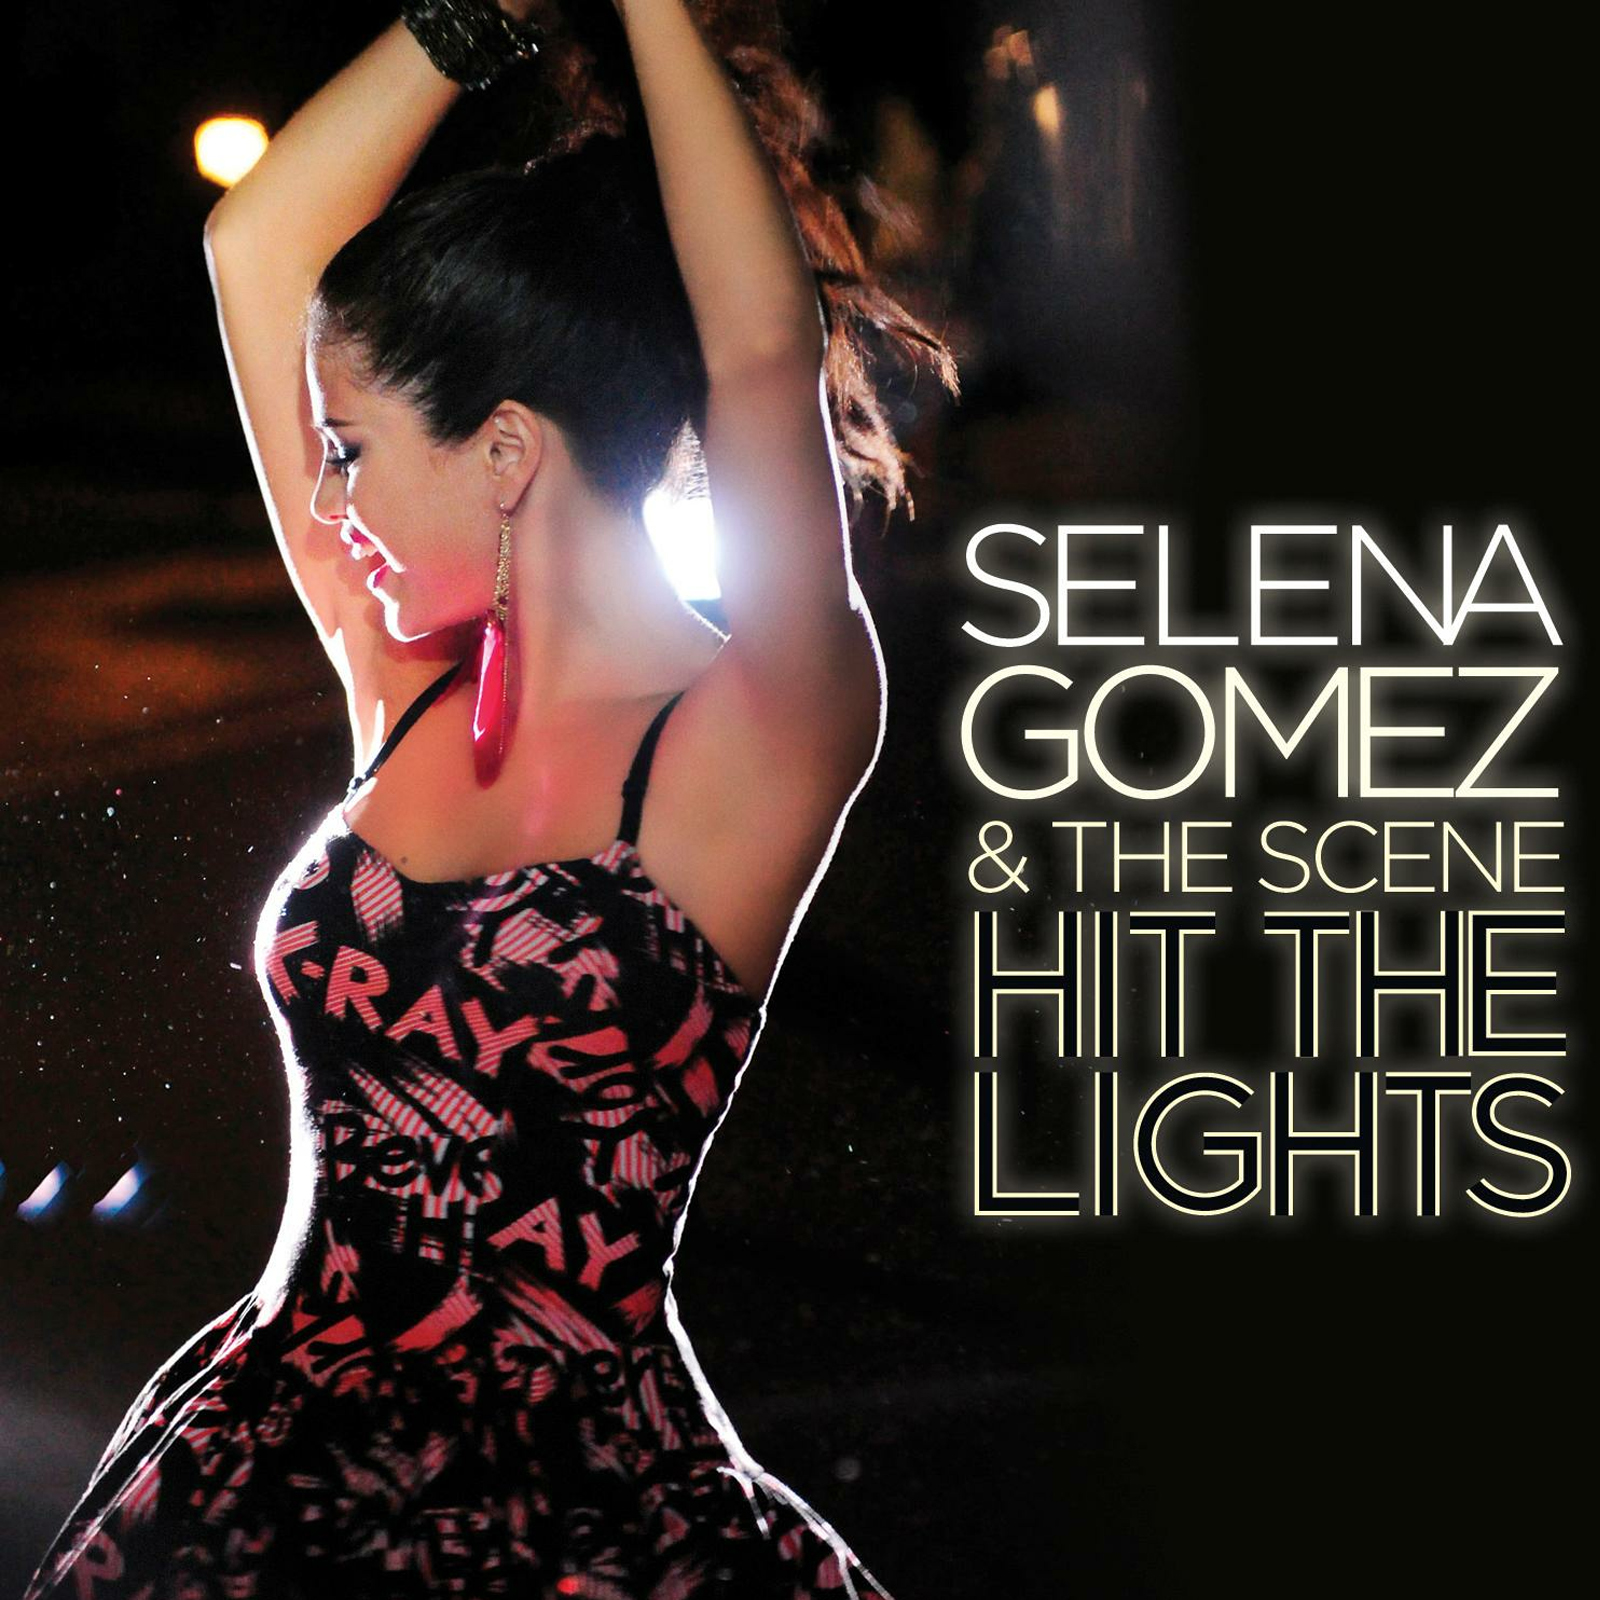 Музыка селеной гомес. Selena Gomez the Scene Hit the Lights. Обложки синглов Селены Гомес. Selena Gomez & the Scene обложка. Музыкальный альбом Селены Гомес.